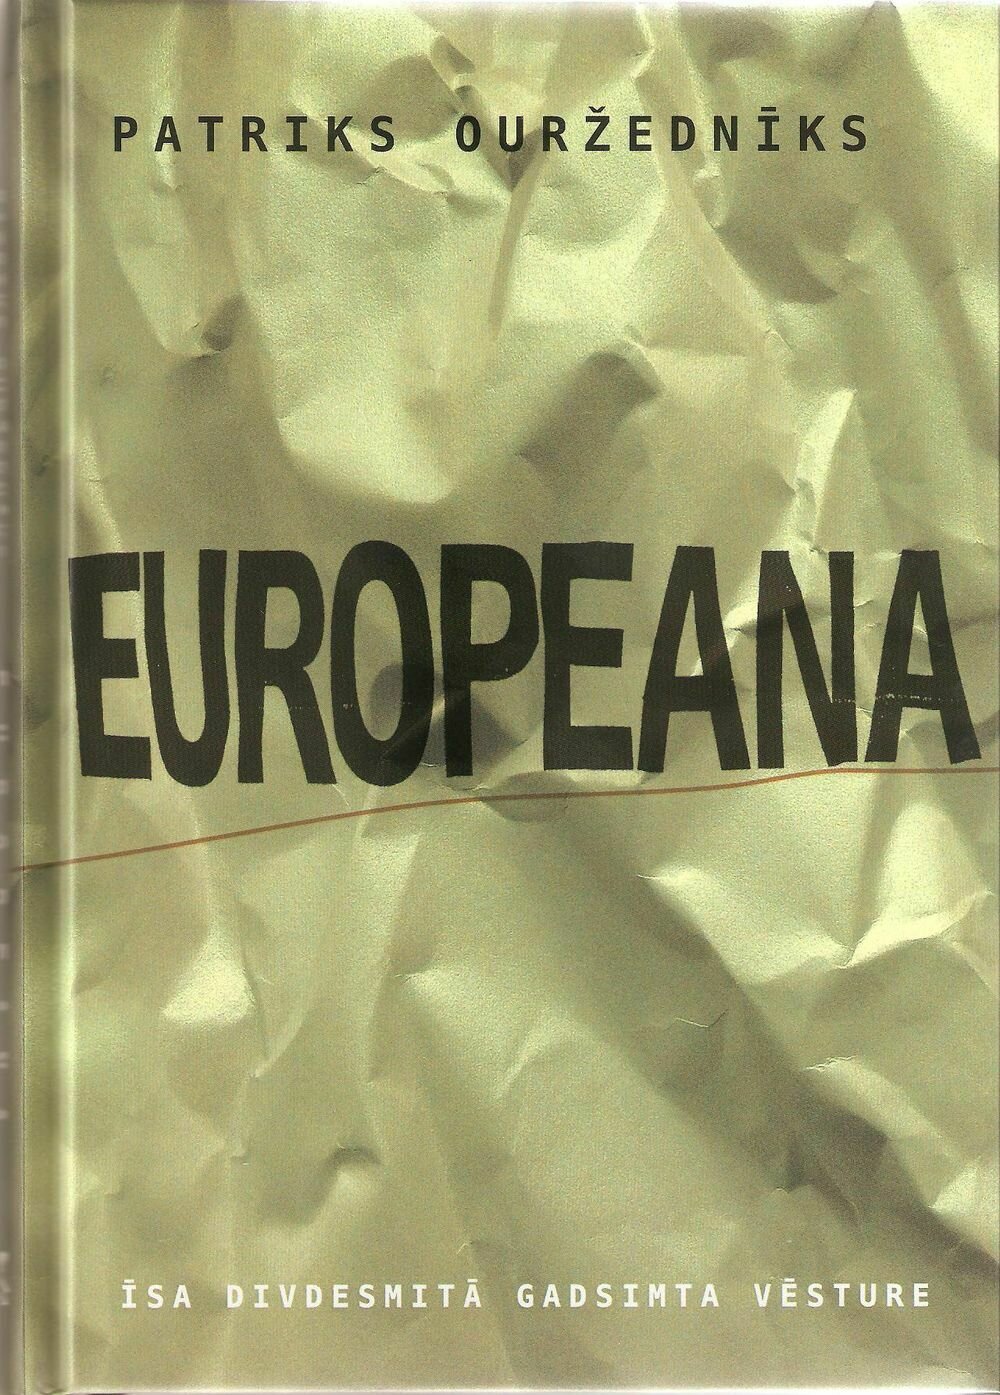 EUROPEANA